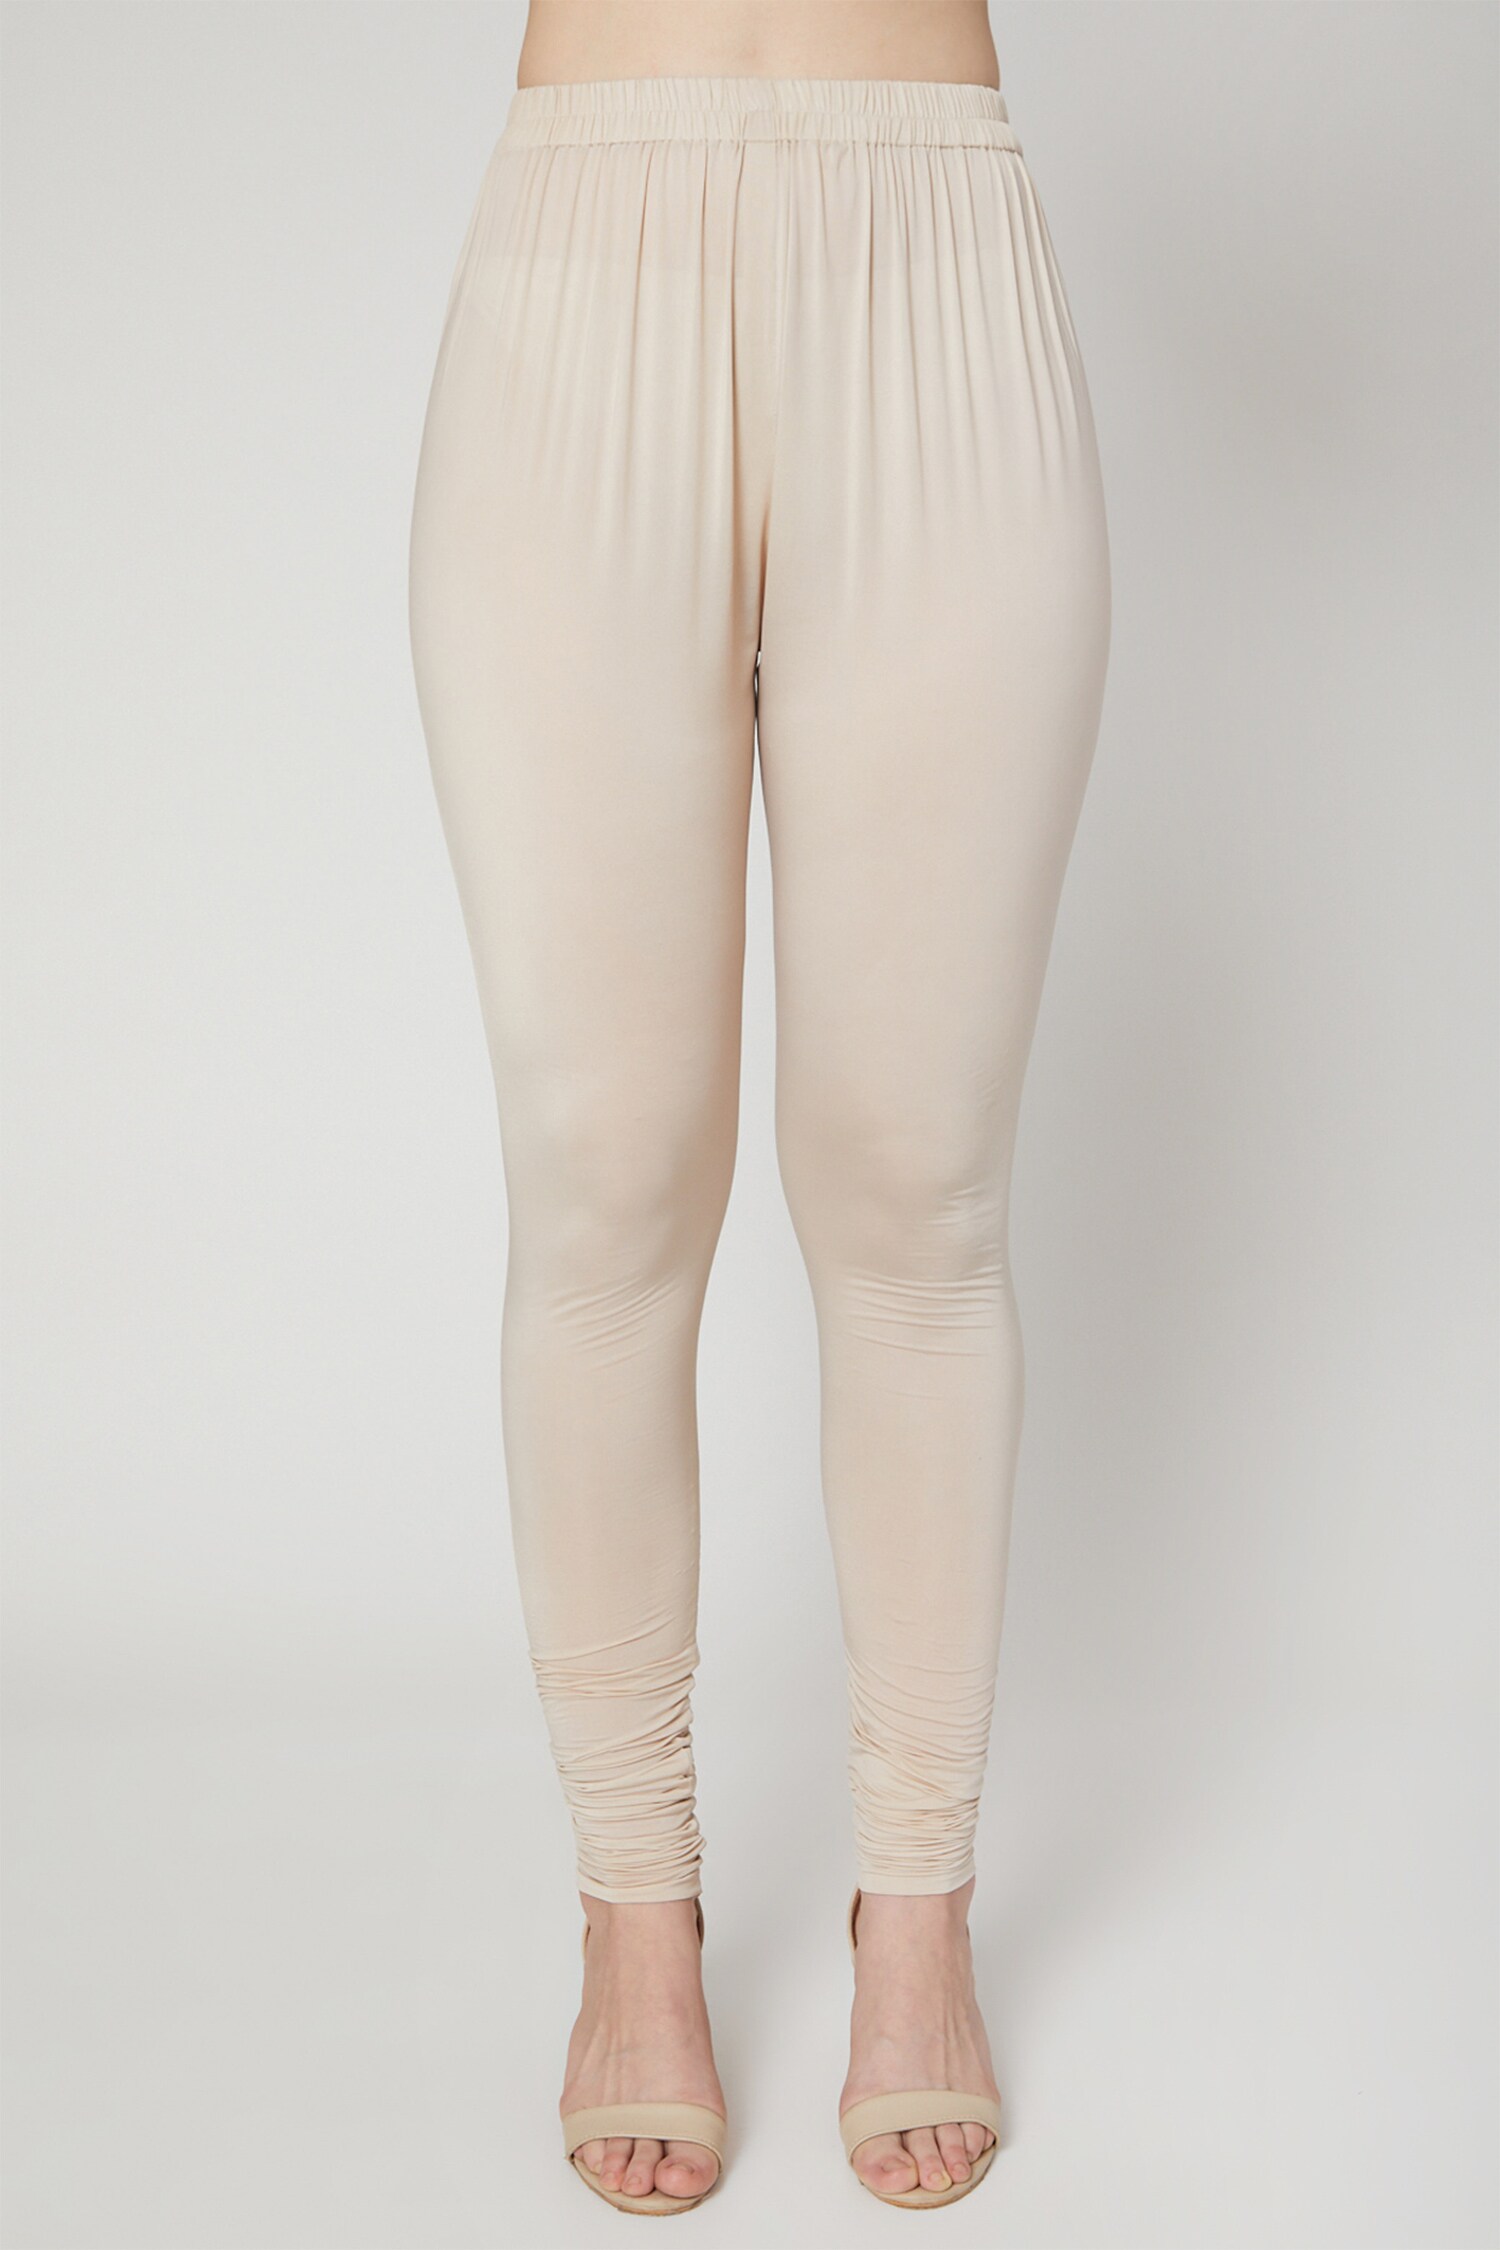 Buy Krypmax Solid Color Cotton Lycra Women Legging (Cream) (XL) at Amazon.in